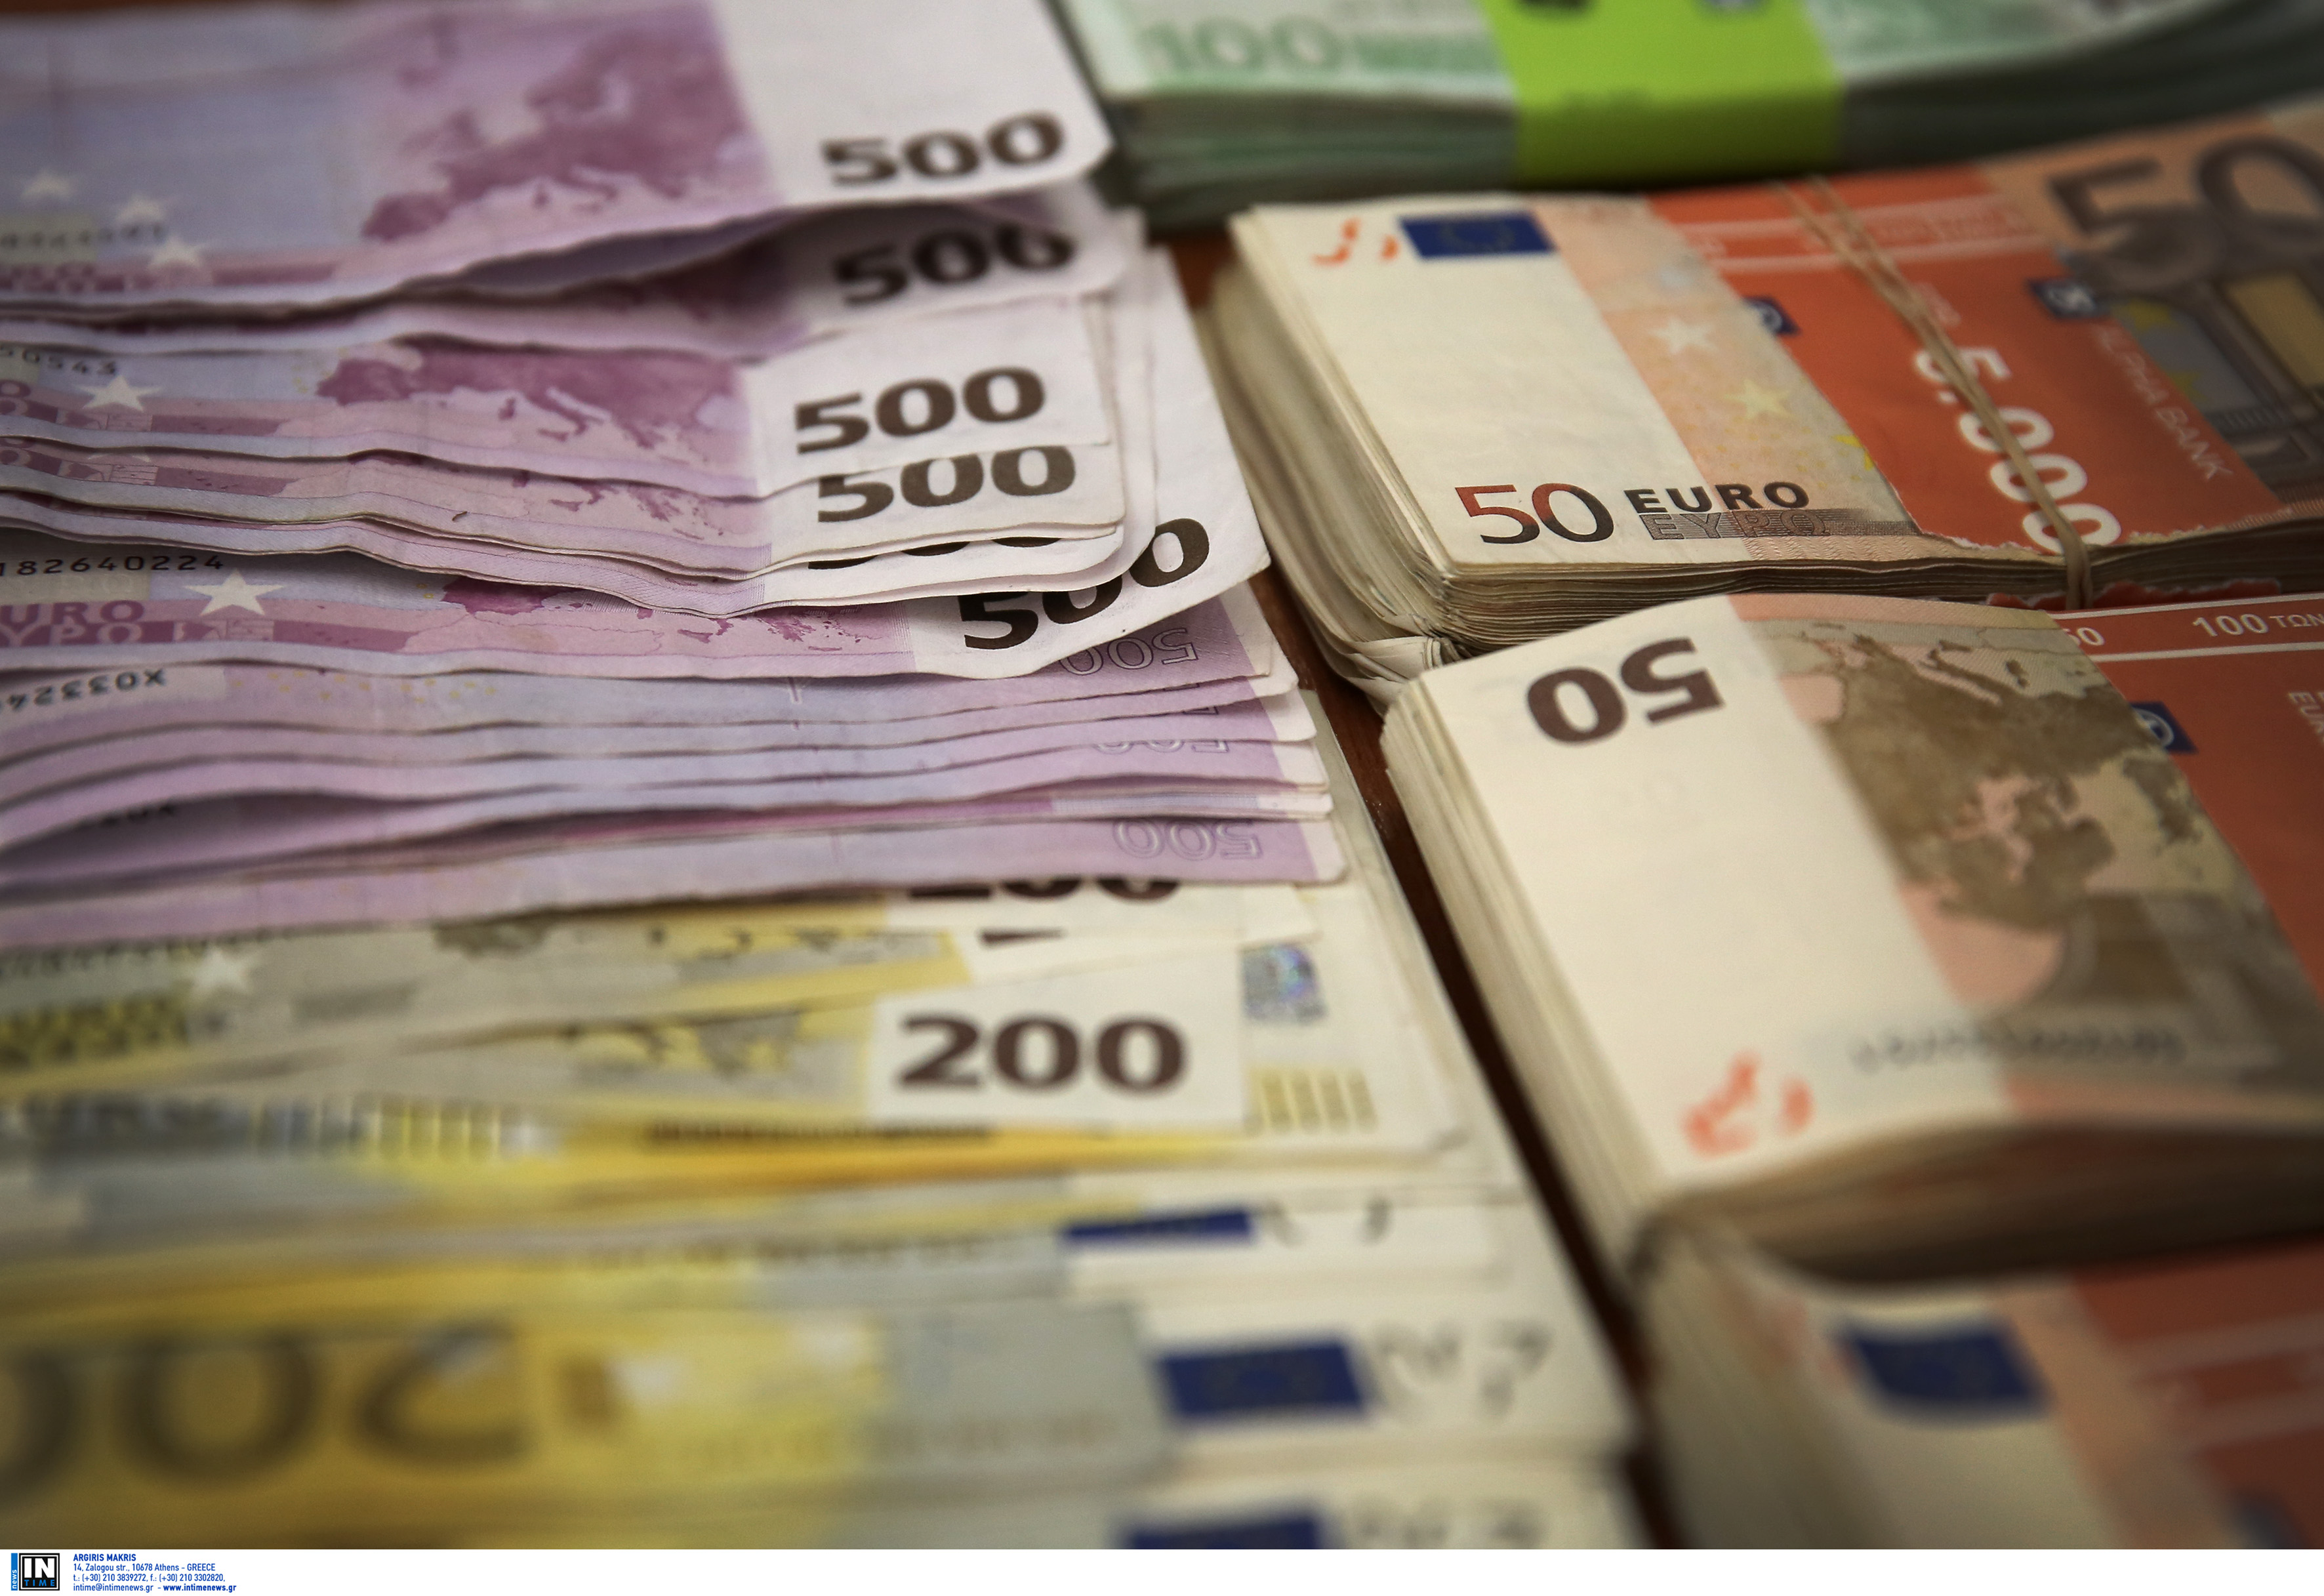 Λάρισα: Έγινε πλούσιος και δεν μπορεί να το κρατήσει κρυφό – Μπαίνουν 200.000 ευρώ στον λογαριασμό του [pics]